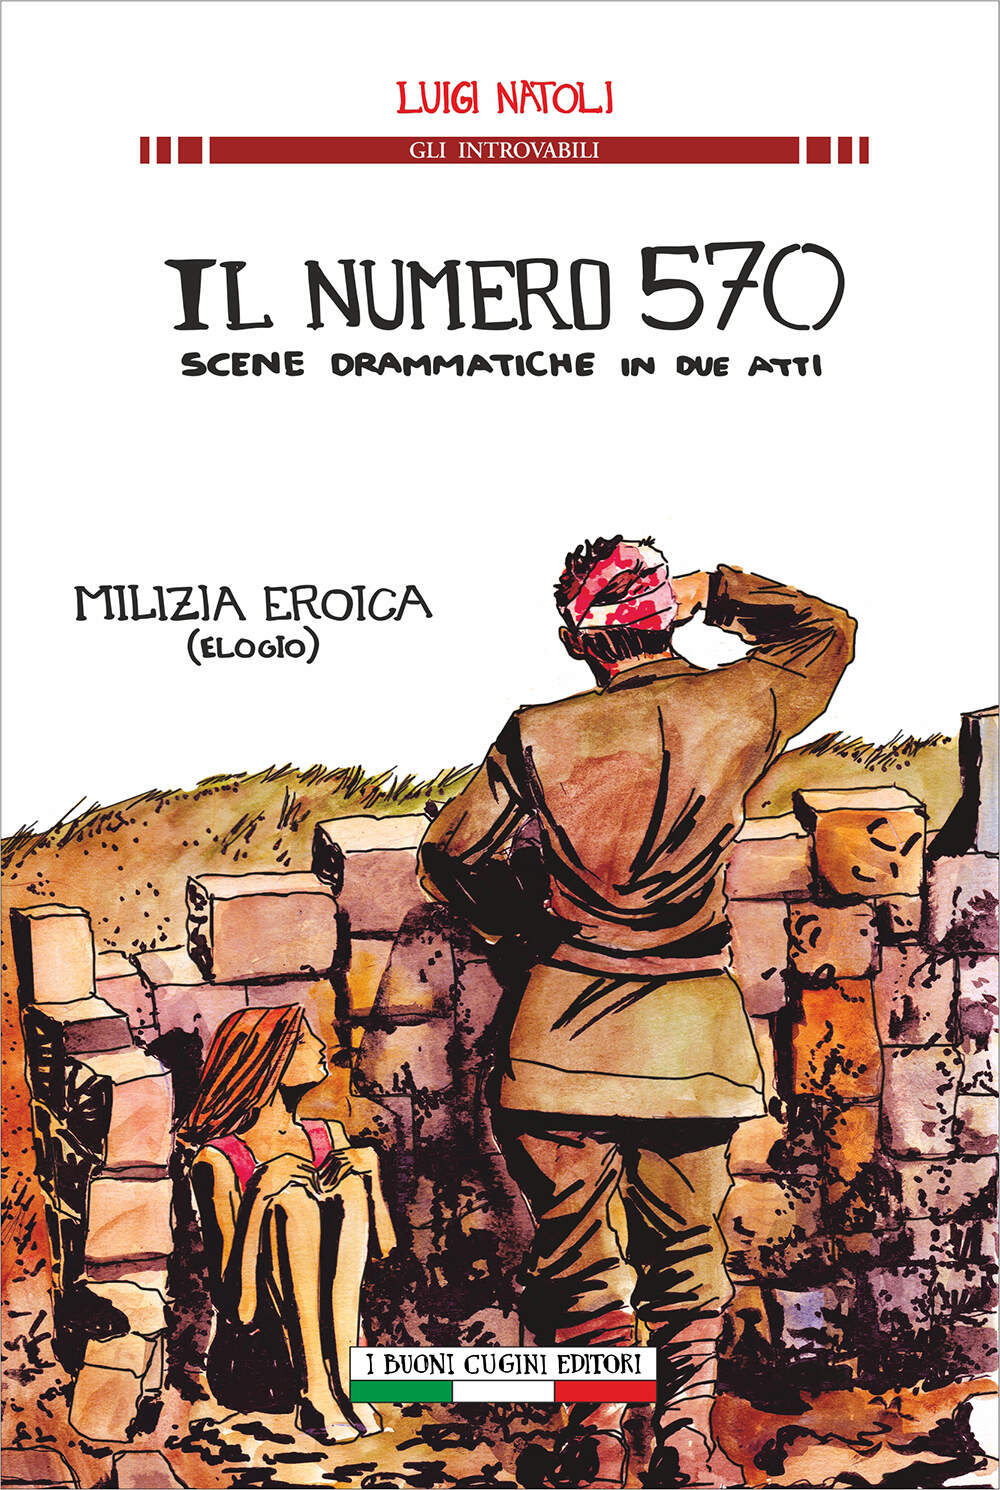 GLI INTROVABILI. Luigi Matoli: Il numero 570. Scene drammatiche in due atti.